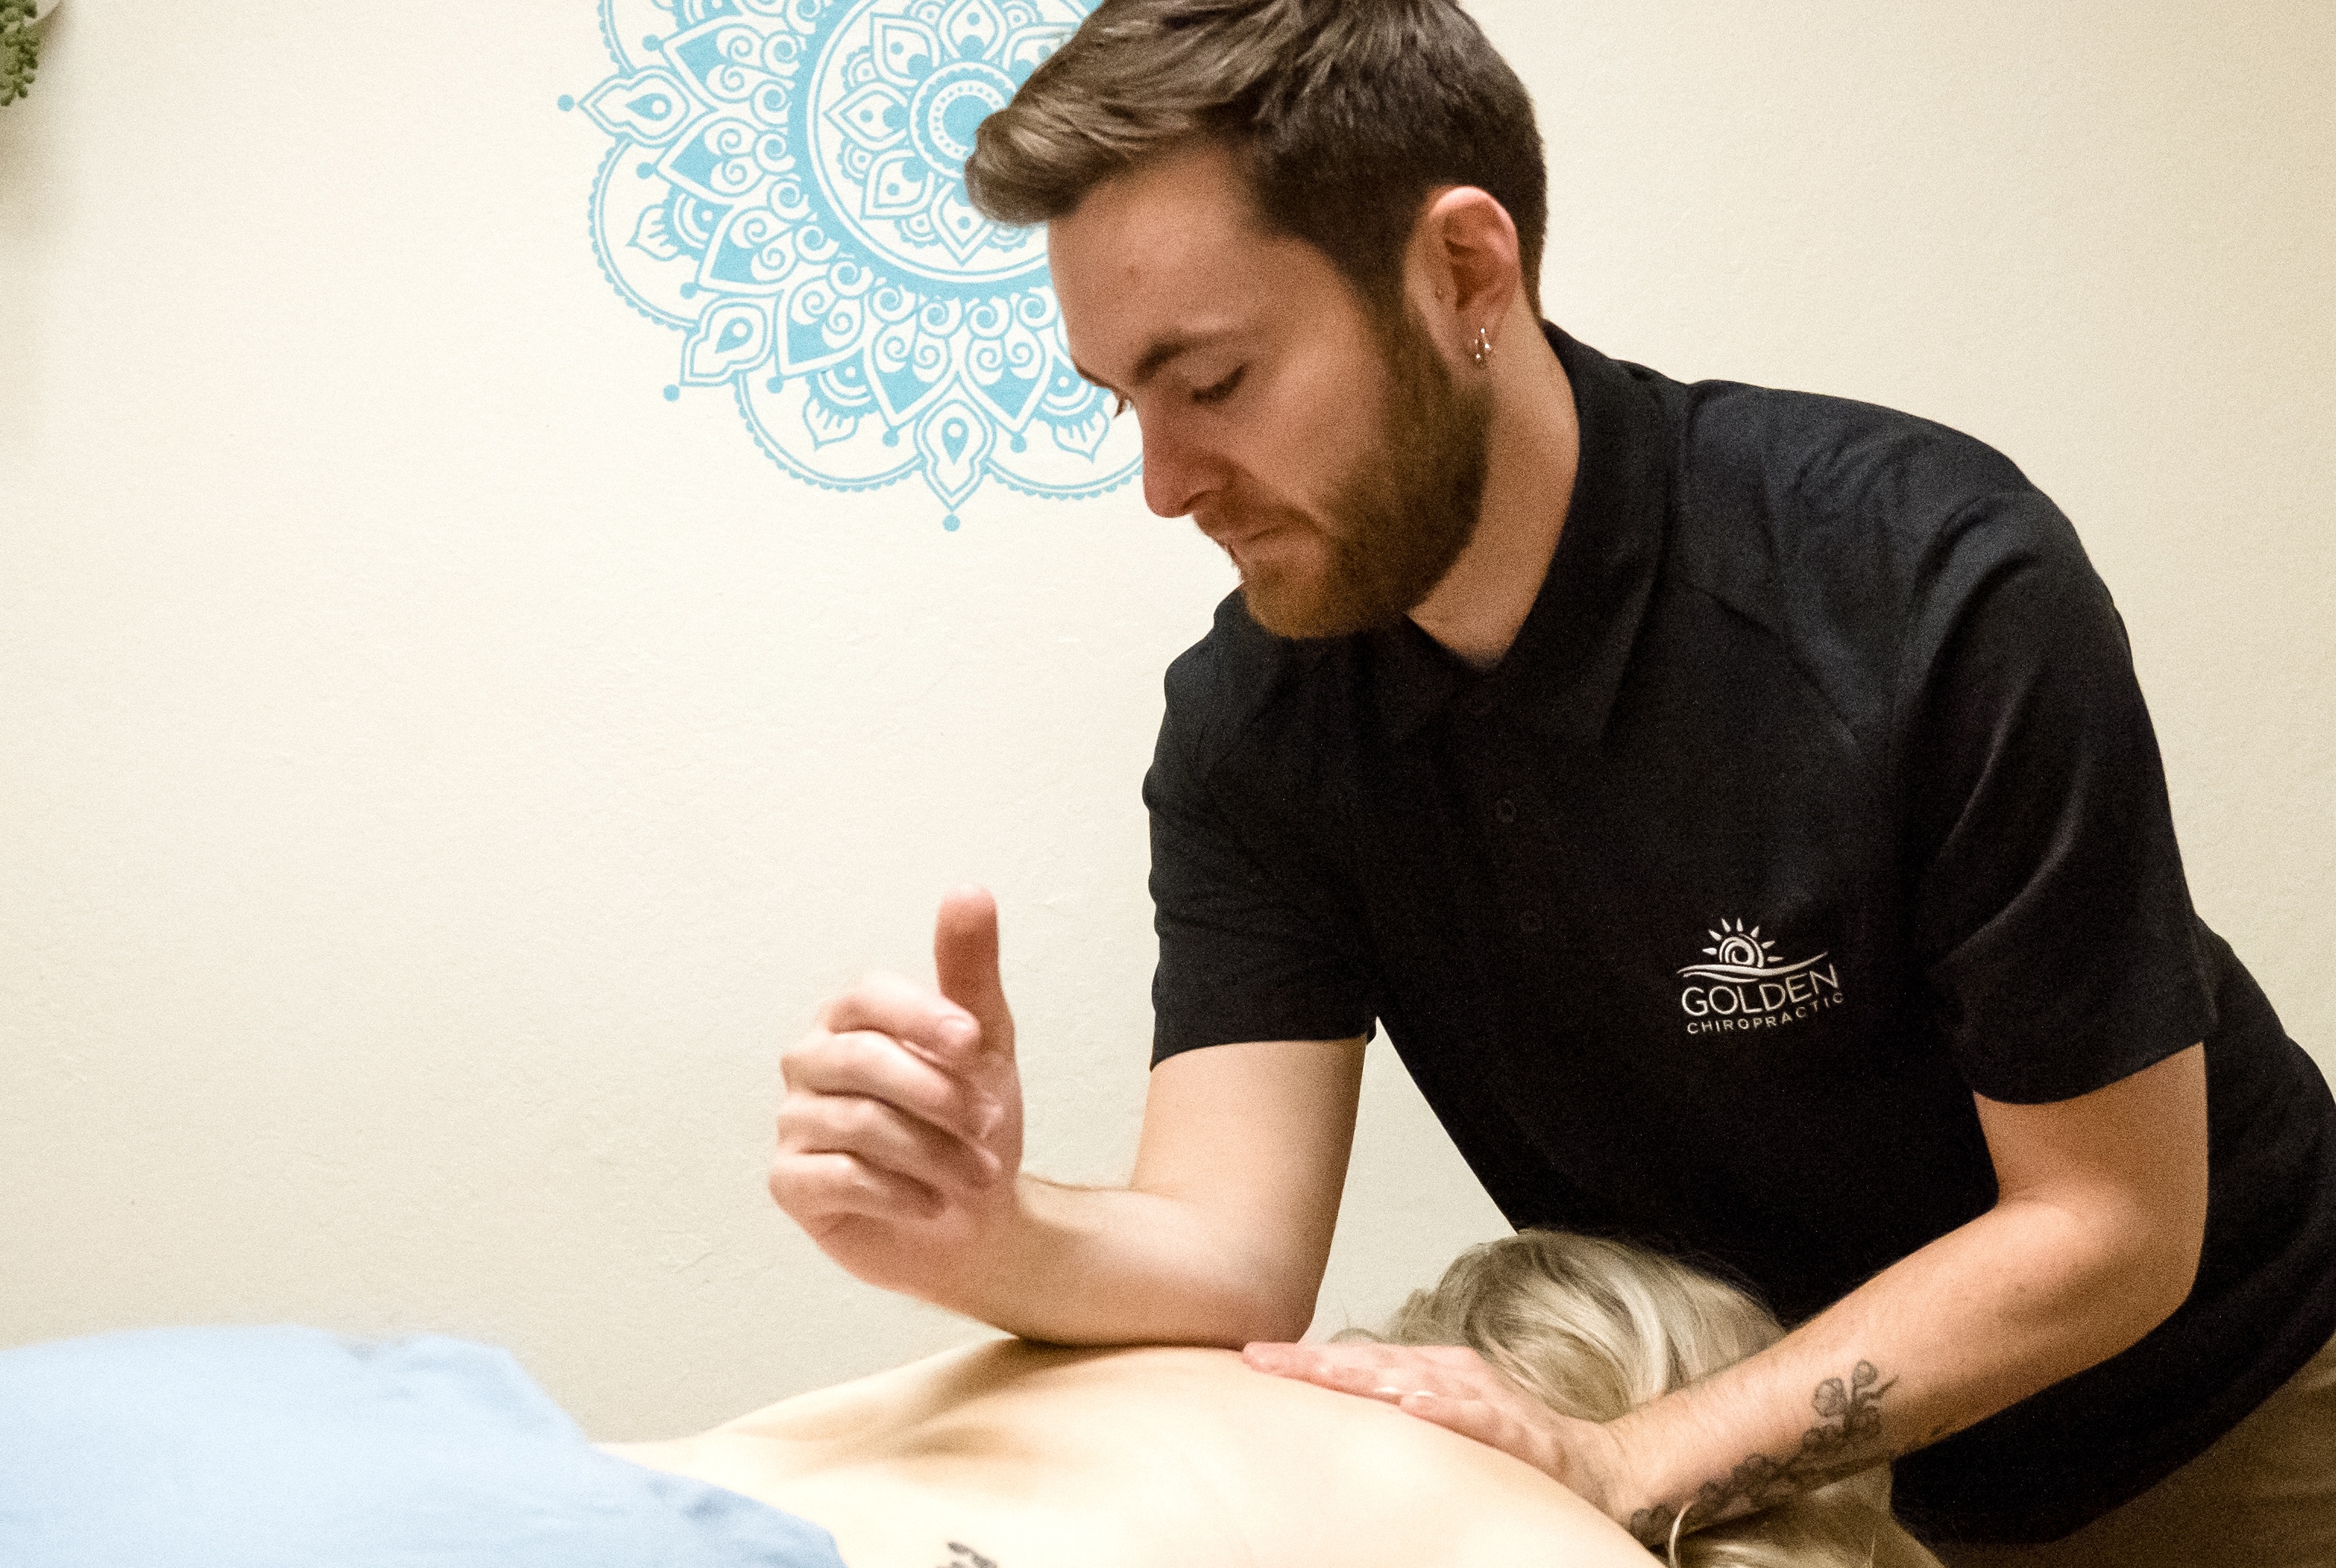 Kyle massaging a female patient